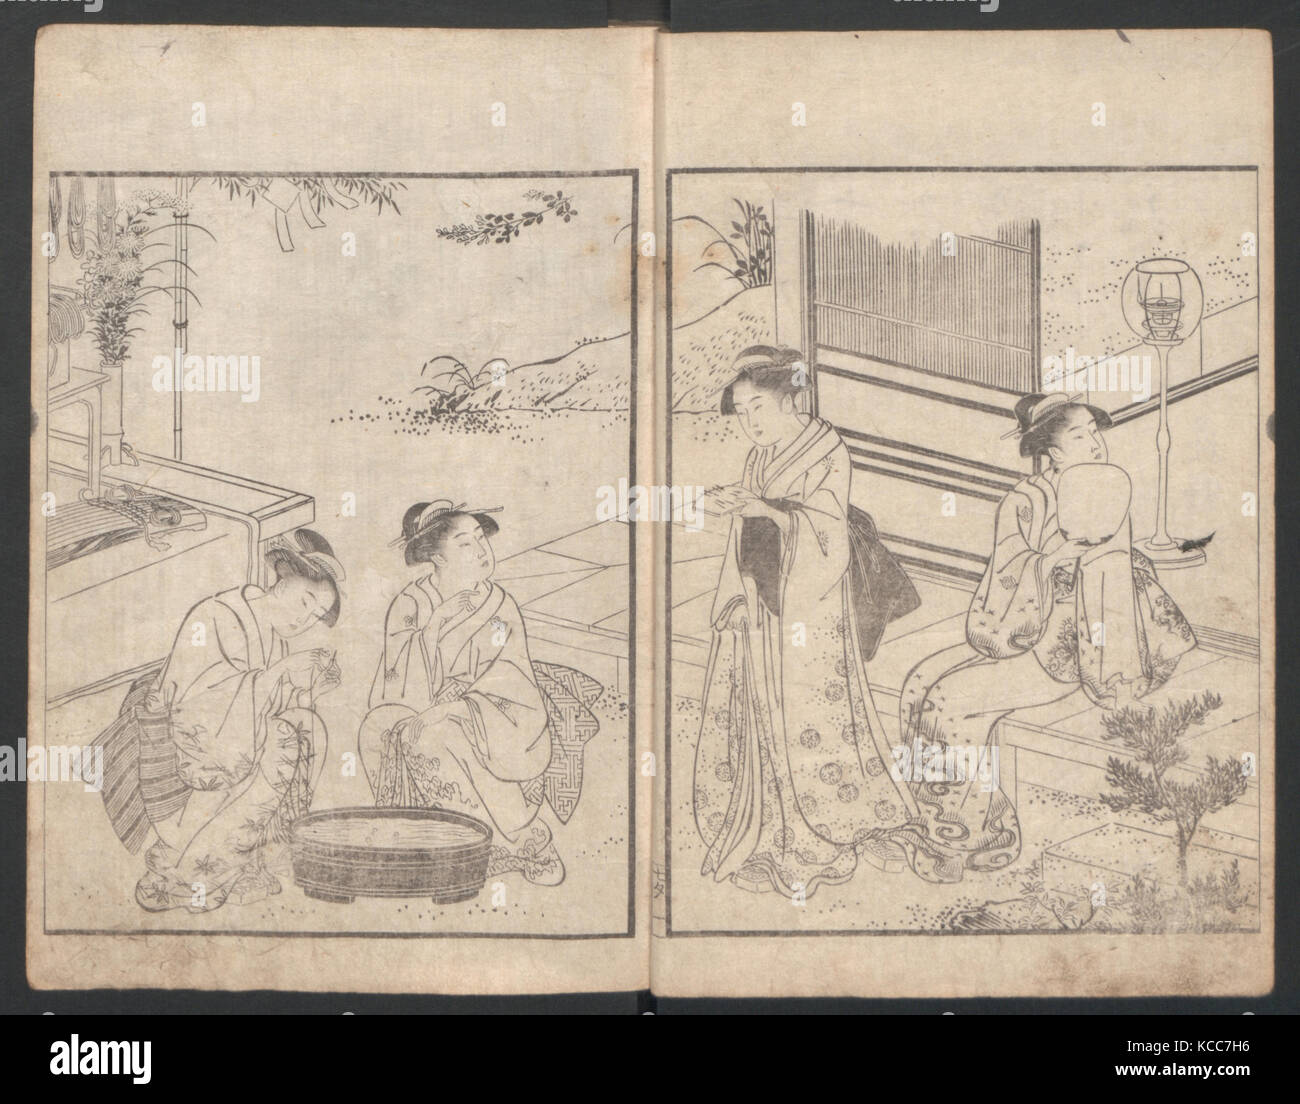 Livre illustré de Kyōka (poèmes) de la bande dessinée 'Maple Bridge', Katsukawa Shunchō, ca. 1790 Banque D'Images